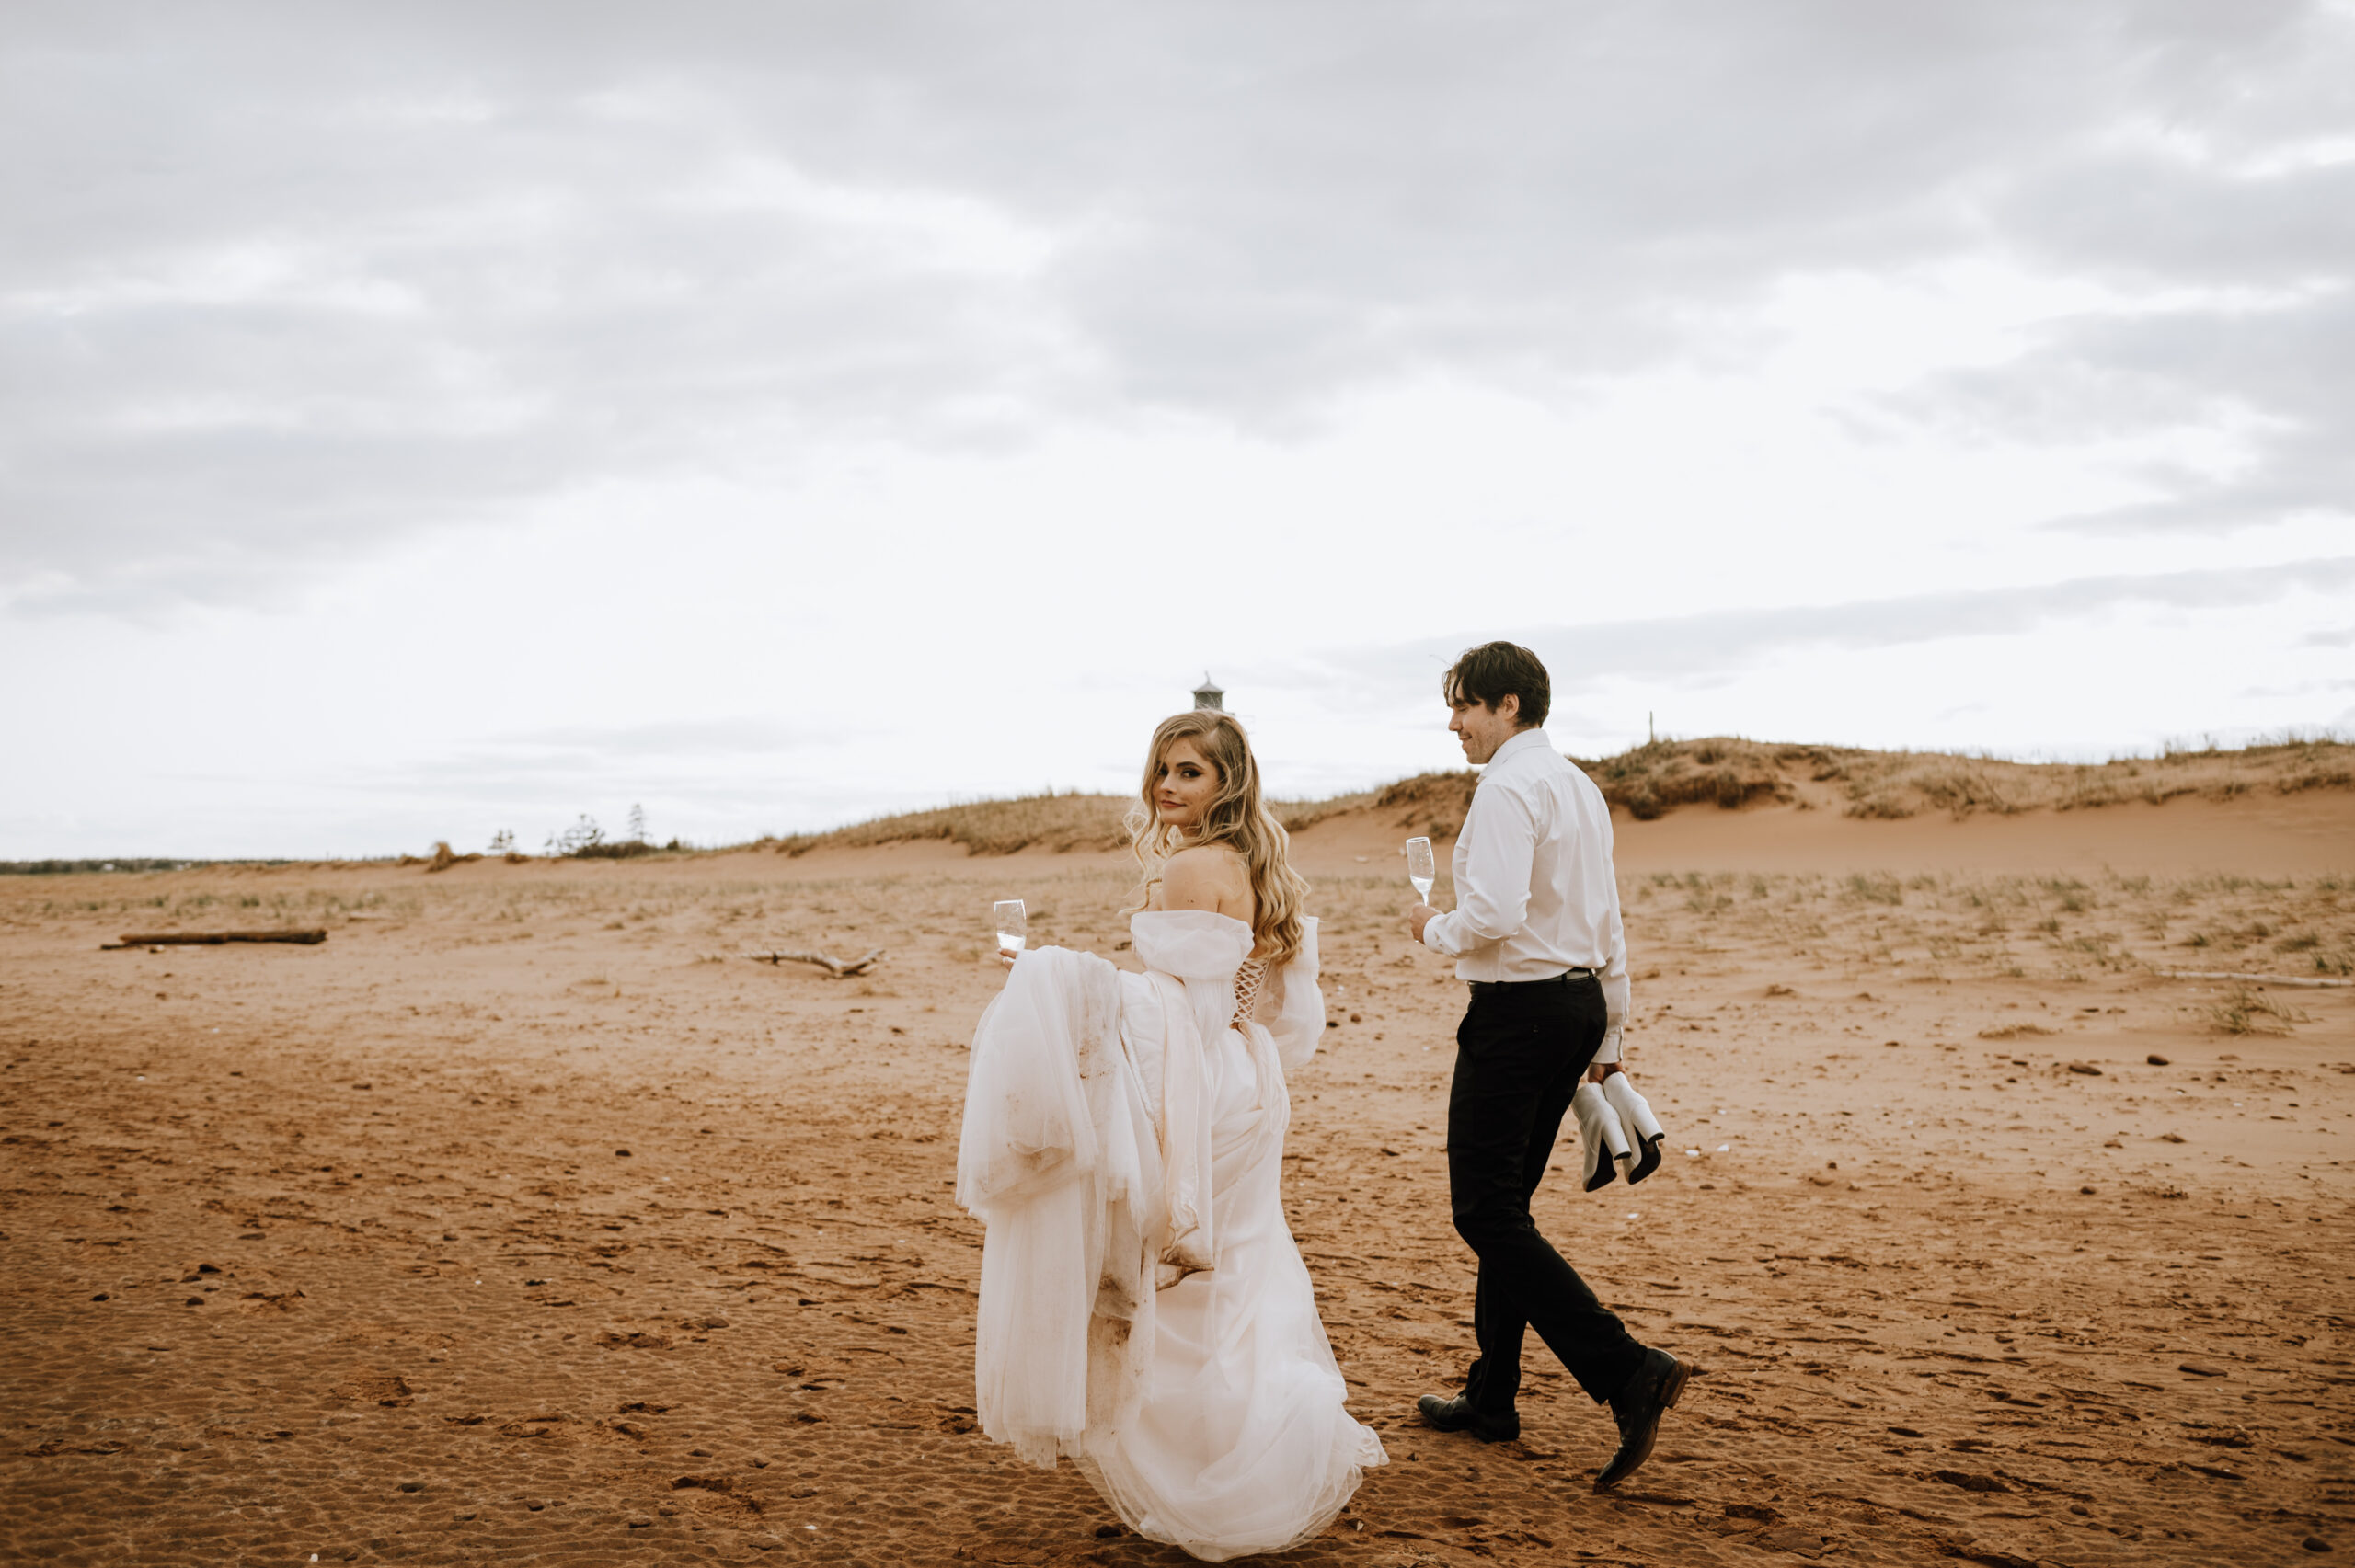 PEI wedding photographer - Michaela Bell Photography